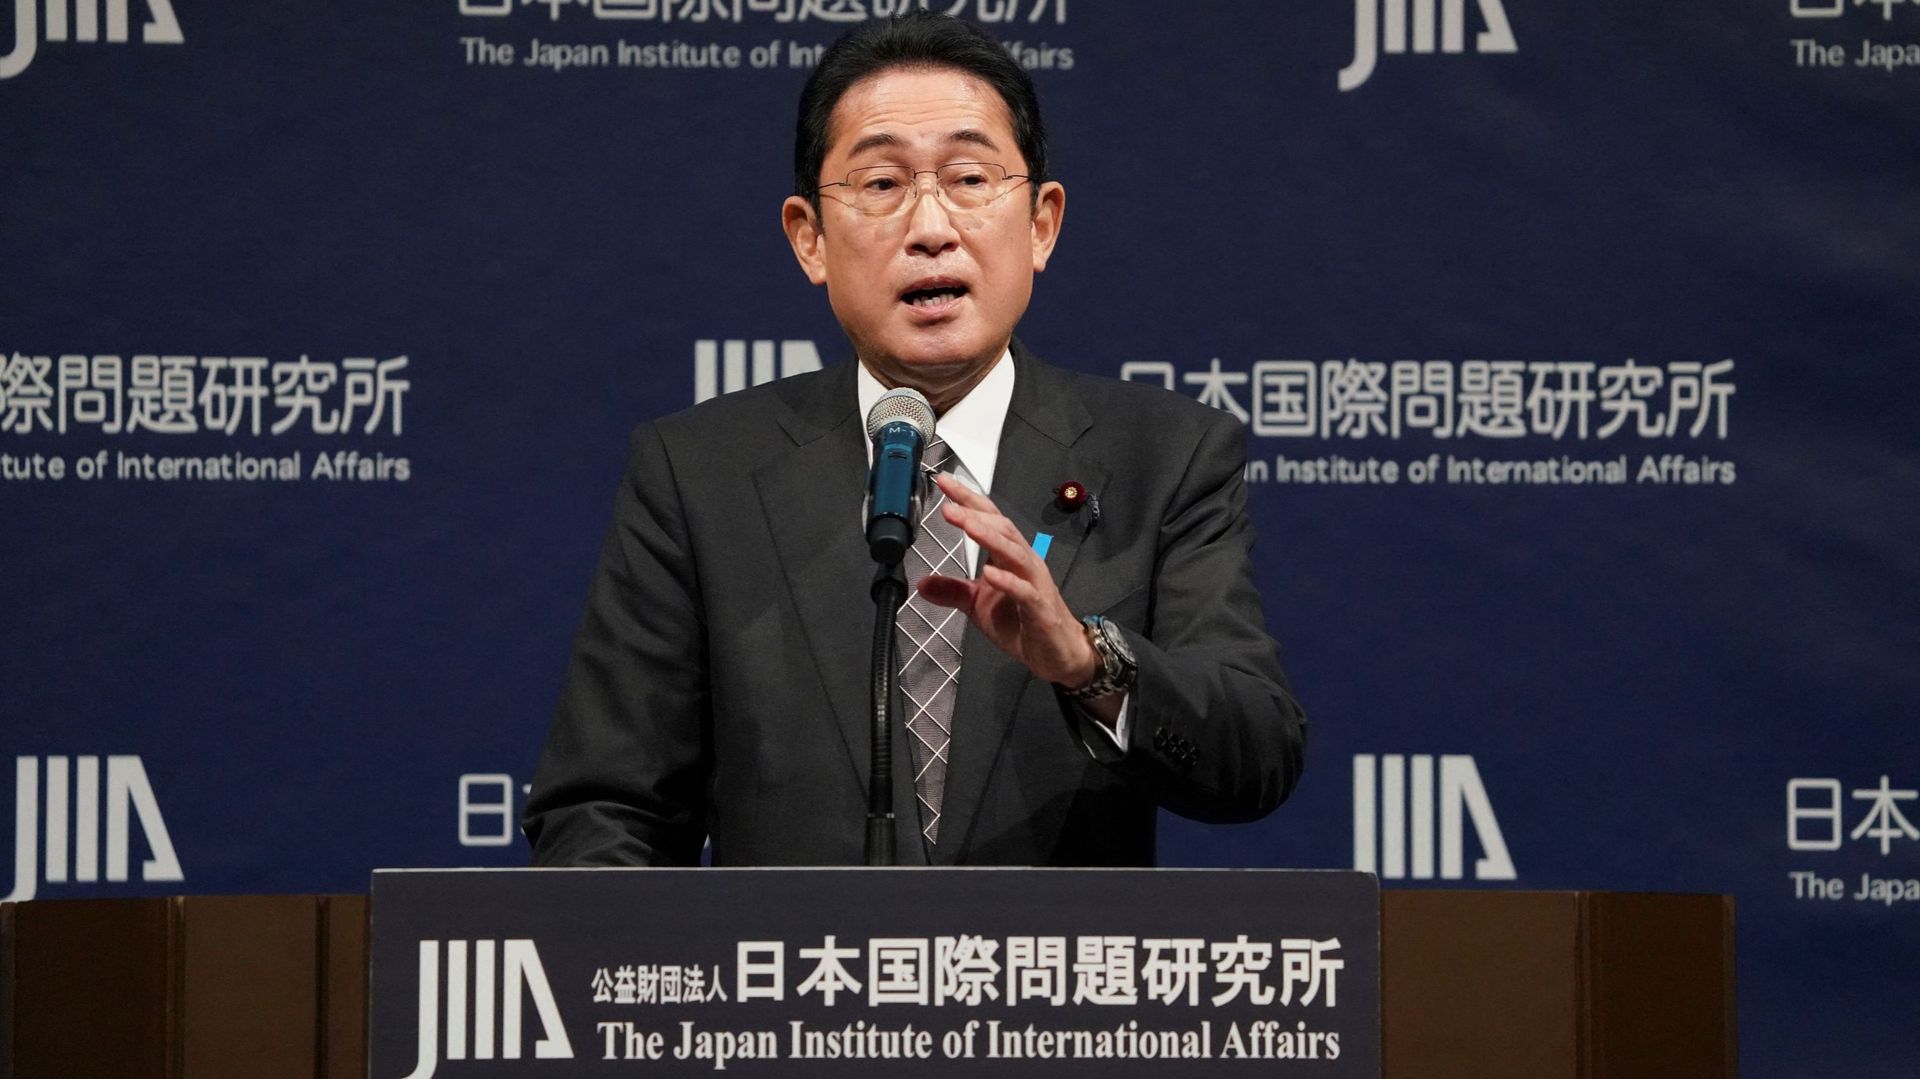 Le Premier ministre japonais Fumio Kishida prononce un discours lors de l'ouverture du 4e Dialogue mondial de Tokyo, à Tokyo, le 20 février 2023.  Kazuhiro NOGI / AFP